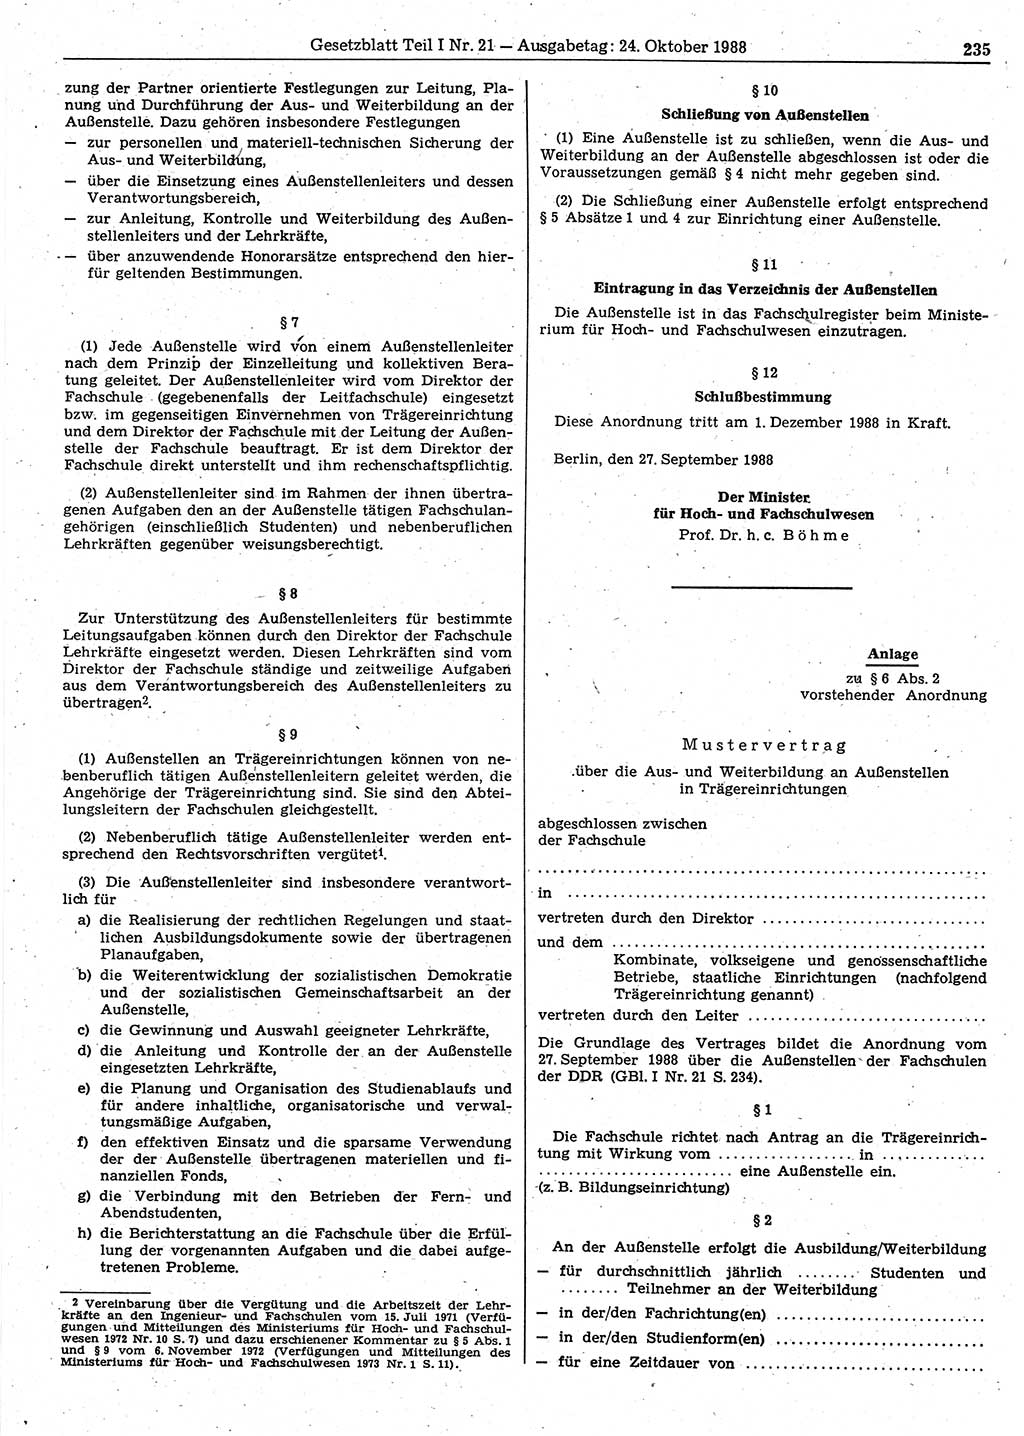 Gesetzblatt (GBl.) der Deutschen Demokratischen Republik (DDR) Teil Ⅰ 1988, Seite 235 (GBl. DDR Ⅰ 1988, S. 235)